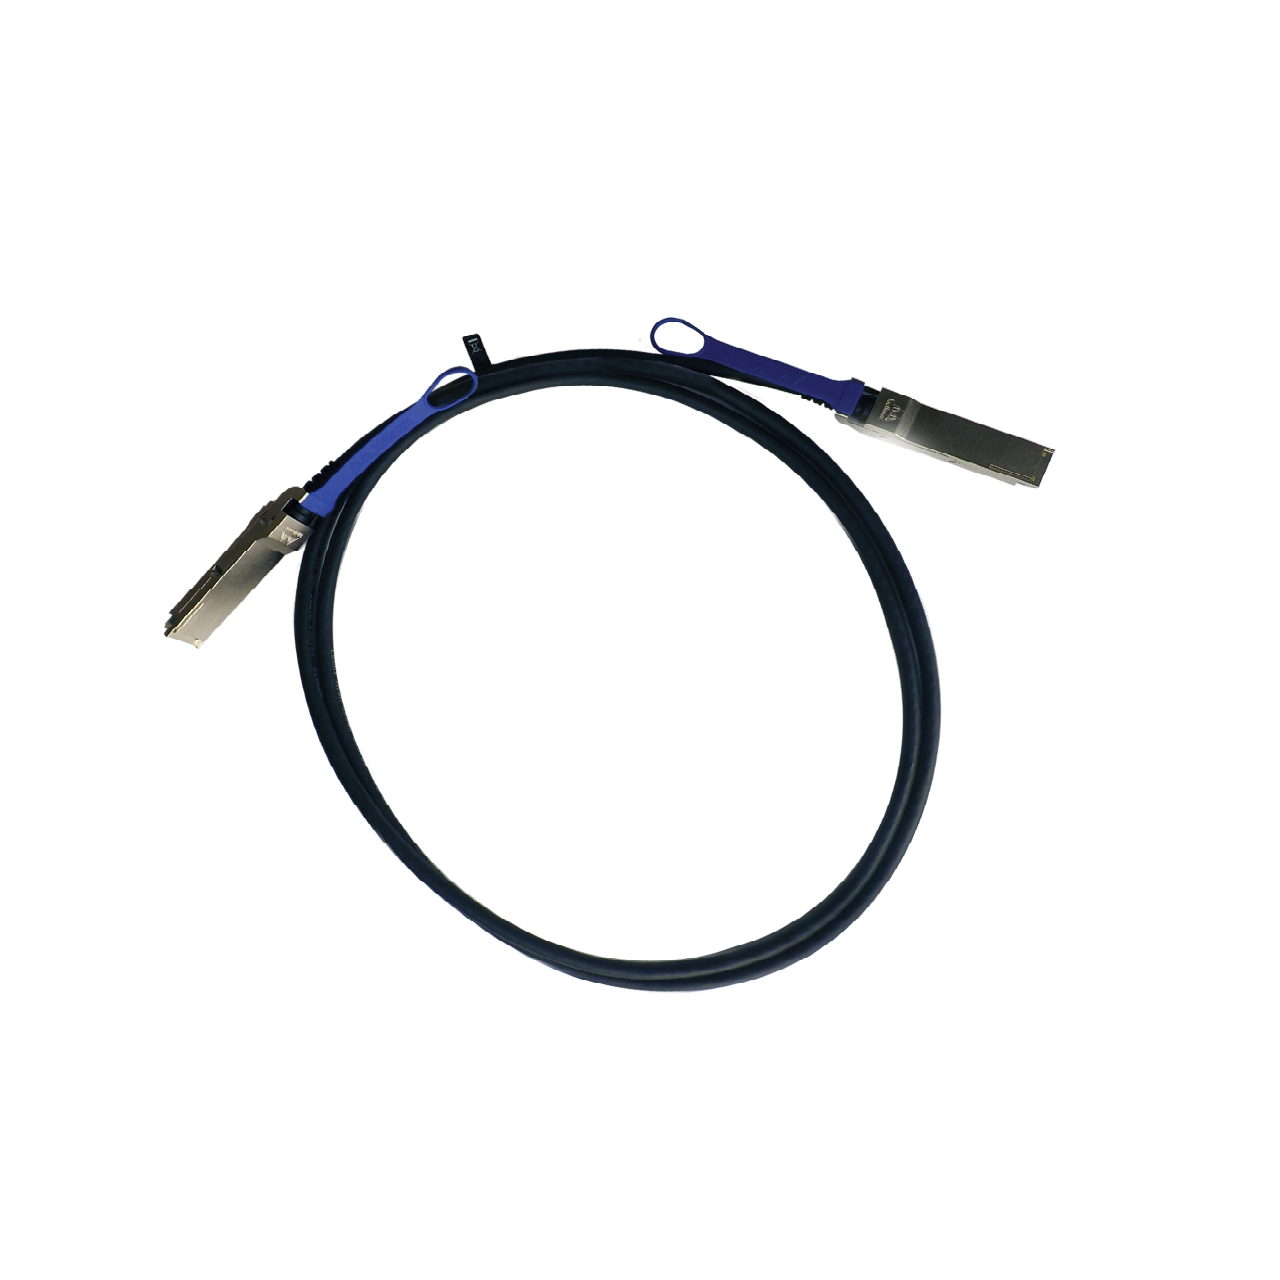 NVIDIA passive copper cable, ETH 10GbE, 10Gb/s, SFP+, 3m